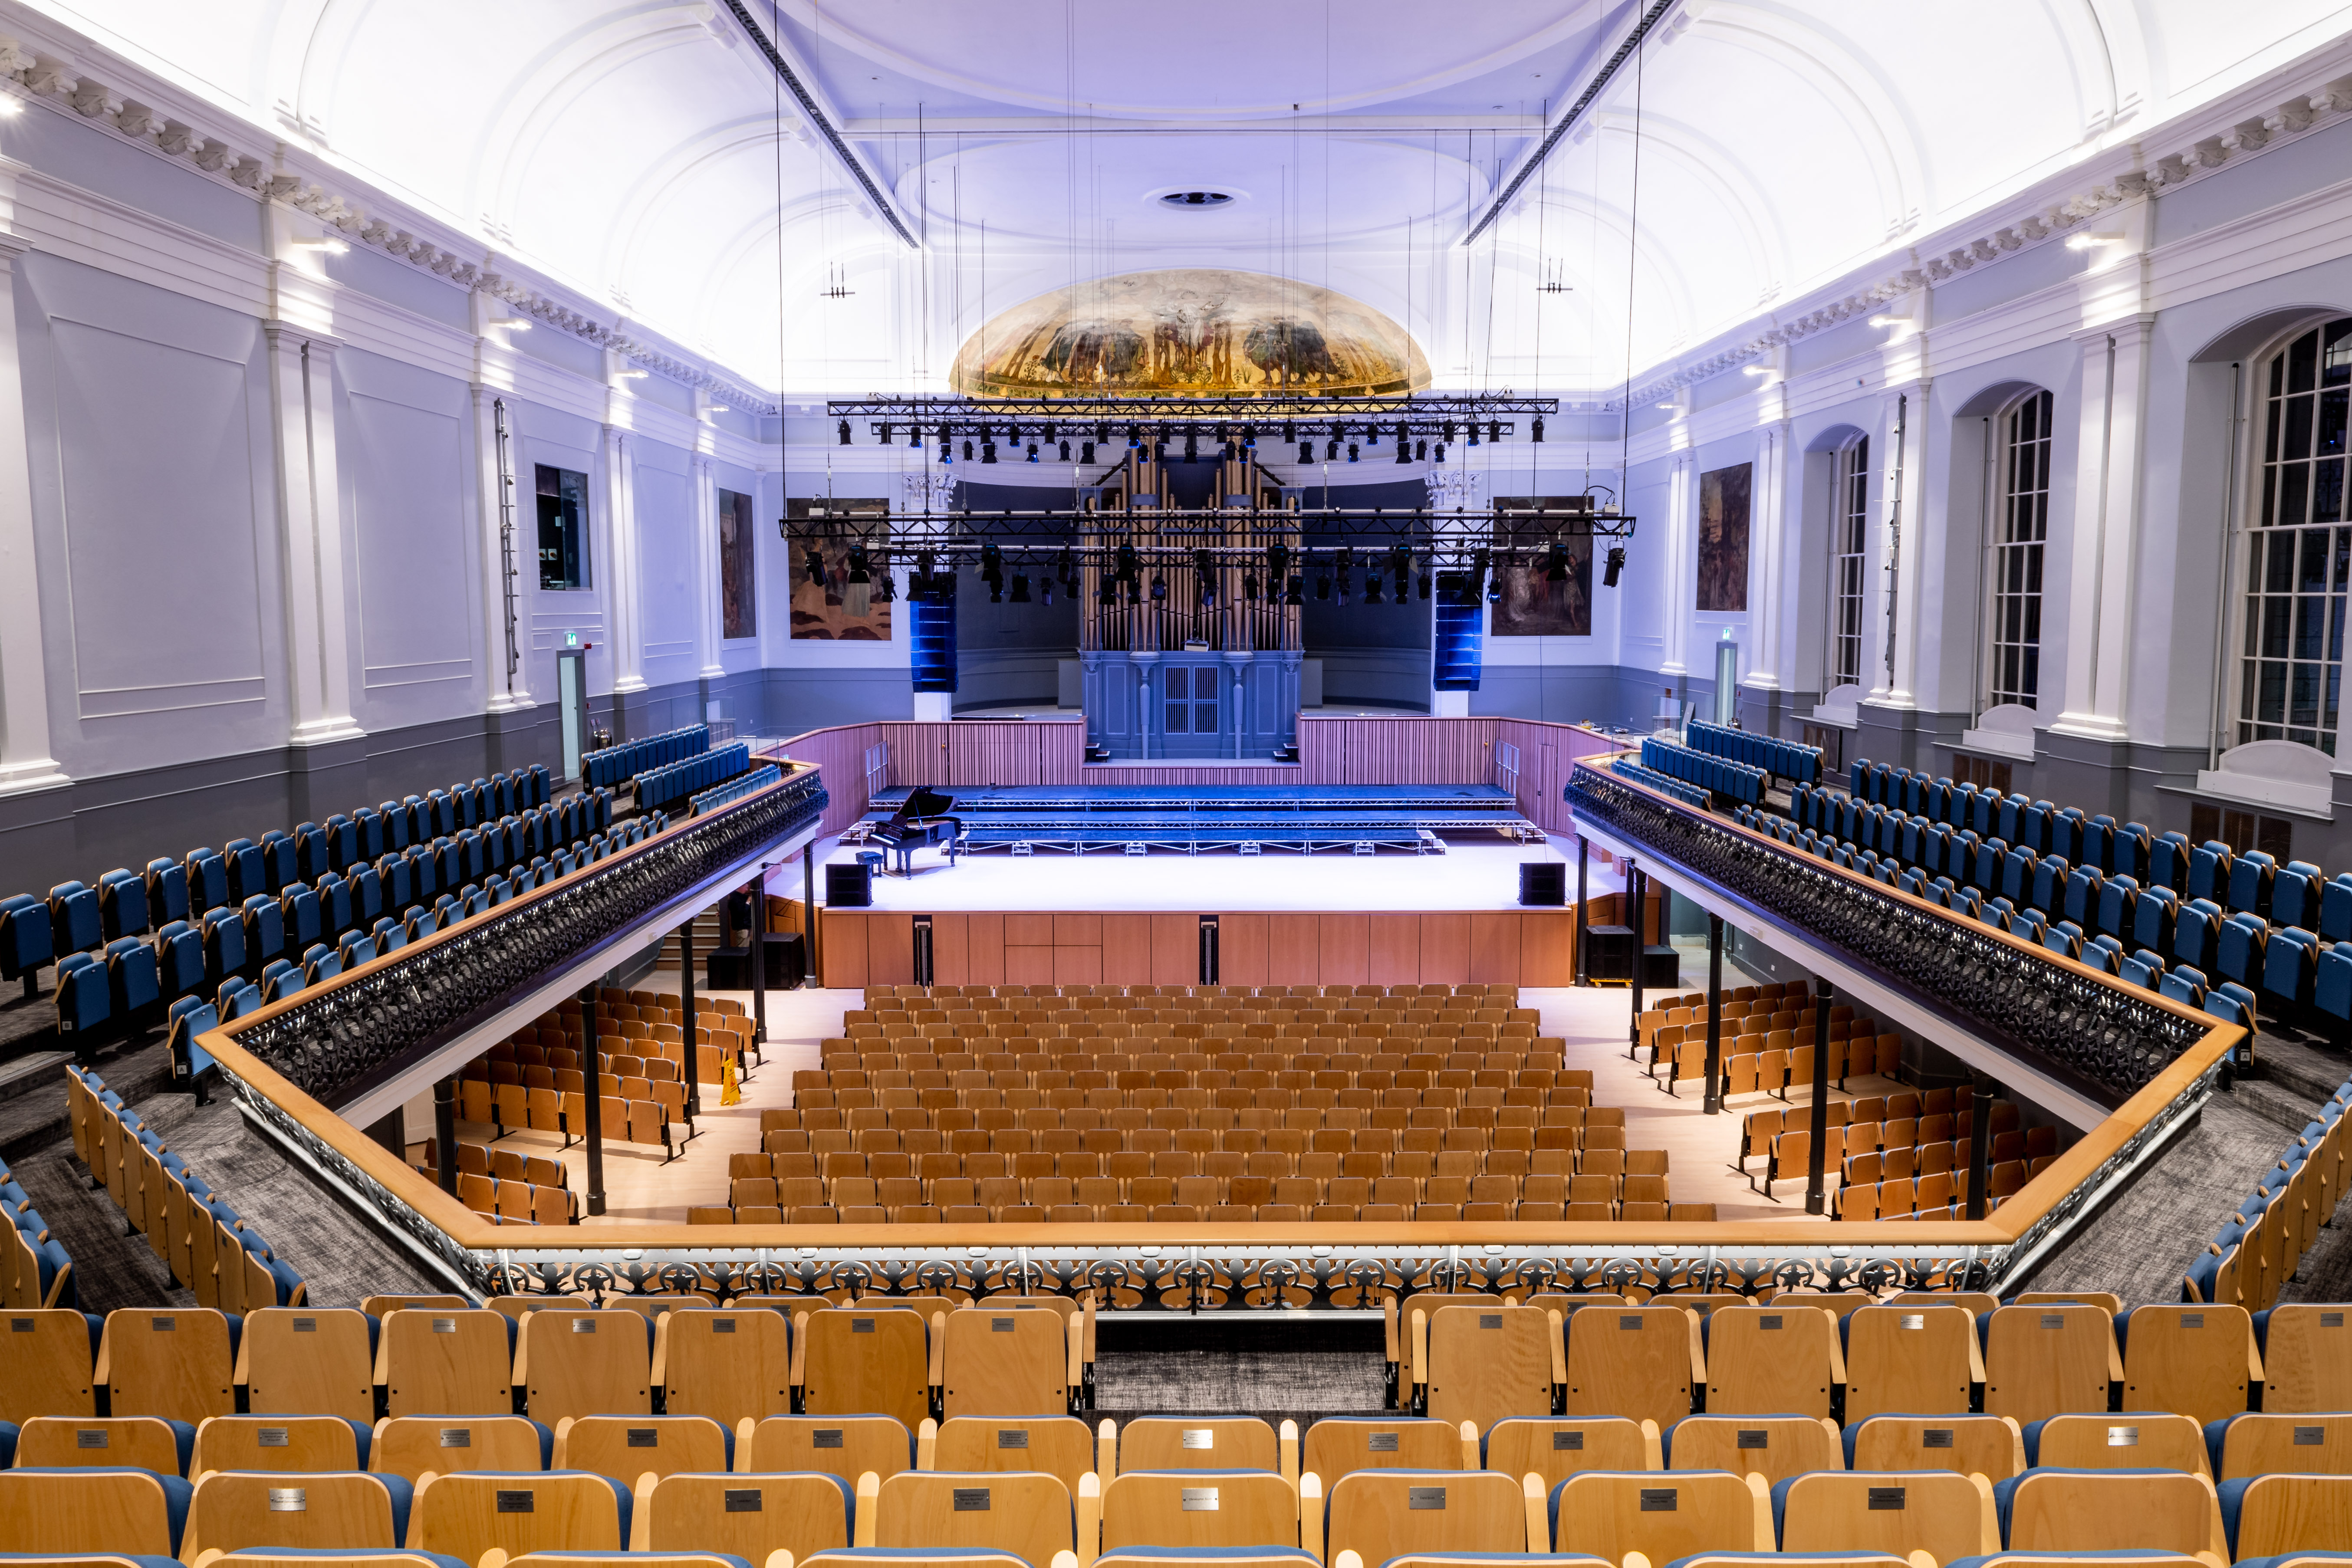 Inside Aberdeen Music Hall